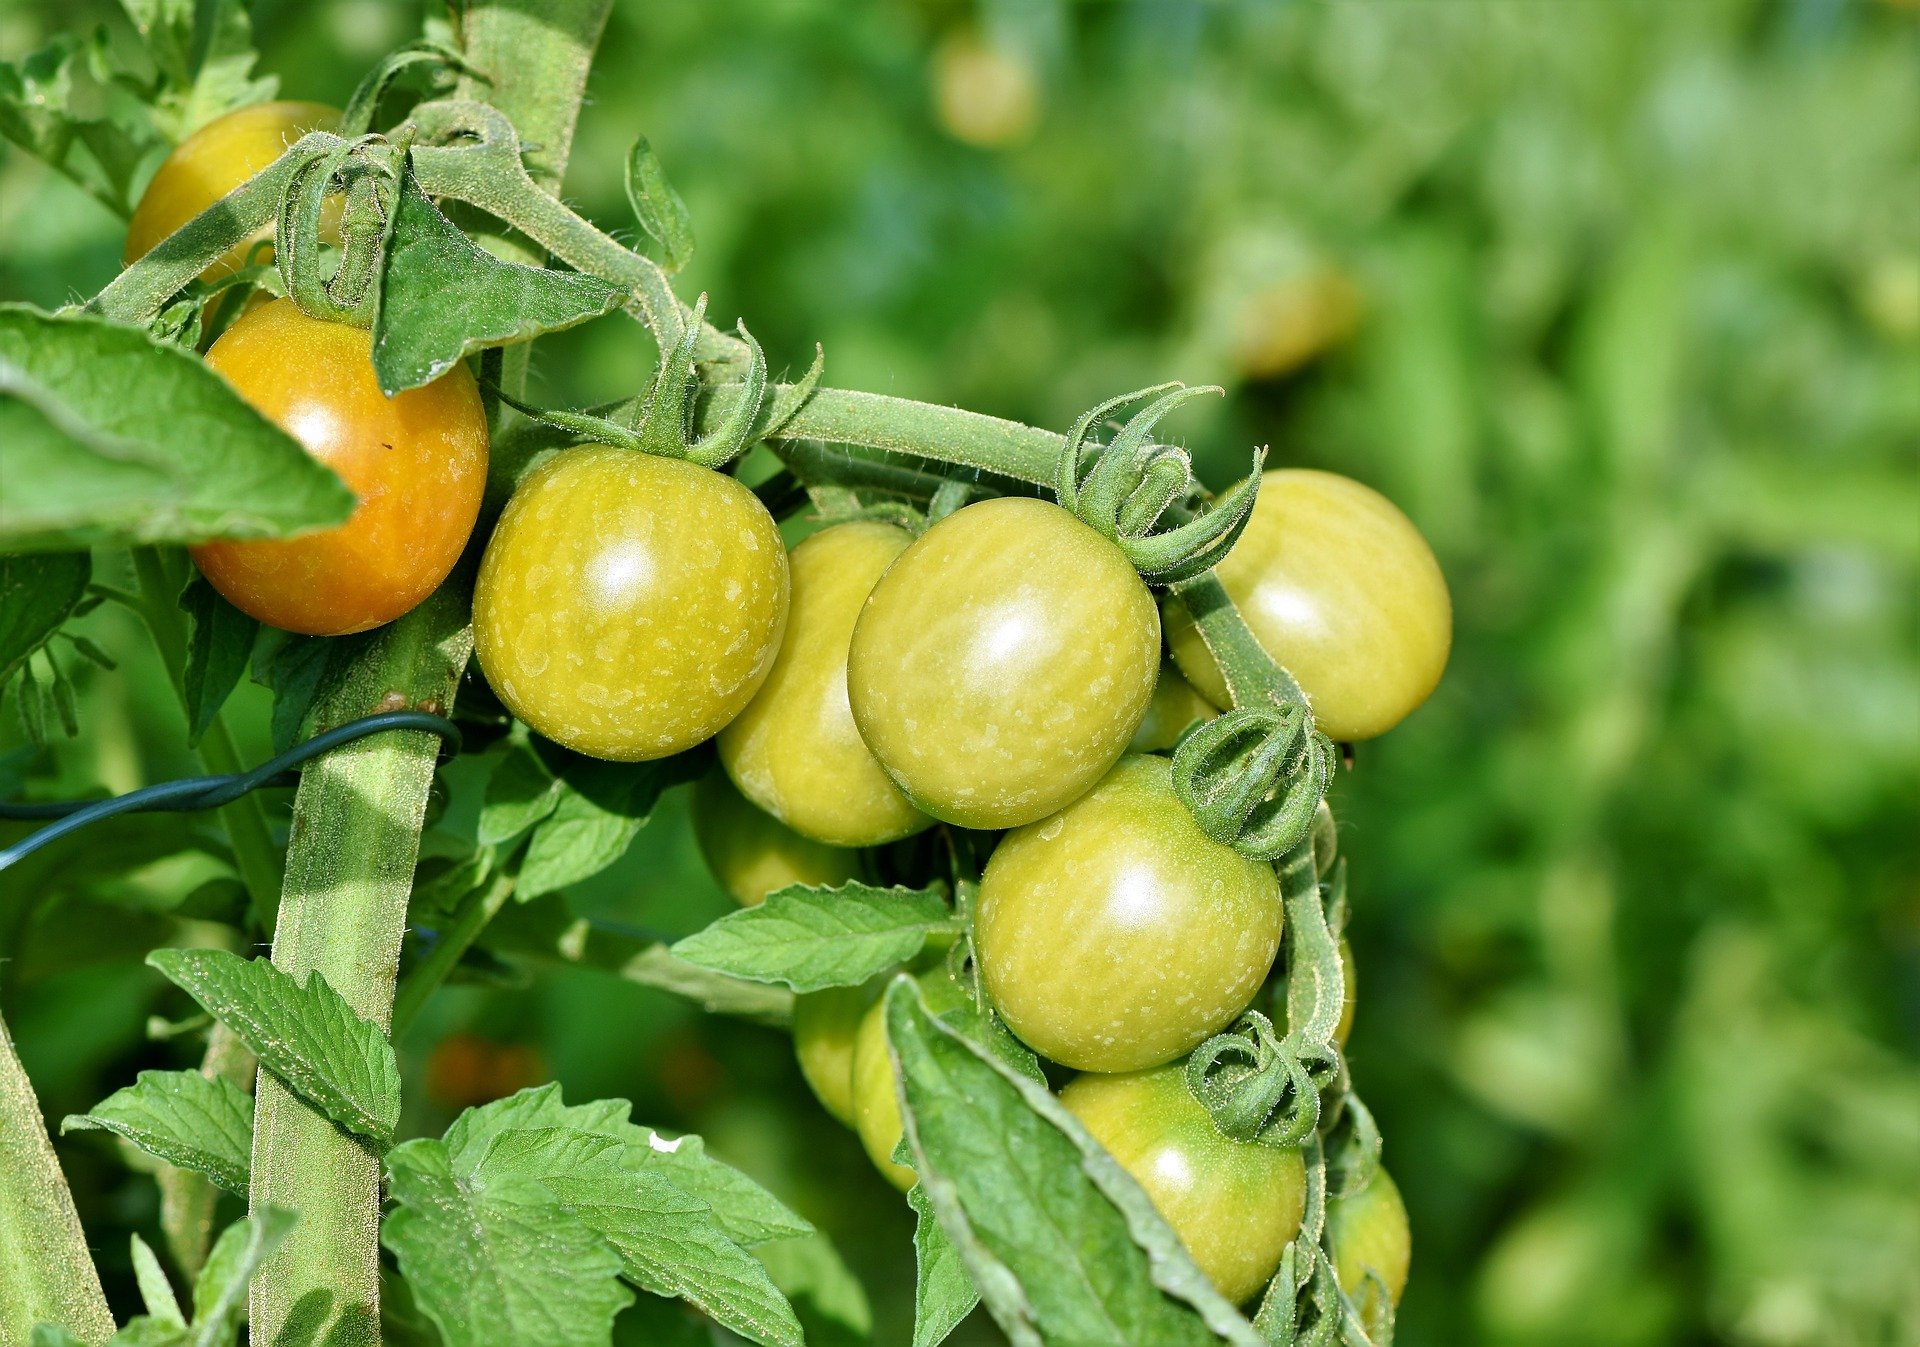 tomatoes 3696968 1920.jpg?resize=1200,630 - La propagation d'un nouveau virus menace les productions de tomates, poivrons, aubergines et autres plantes